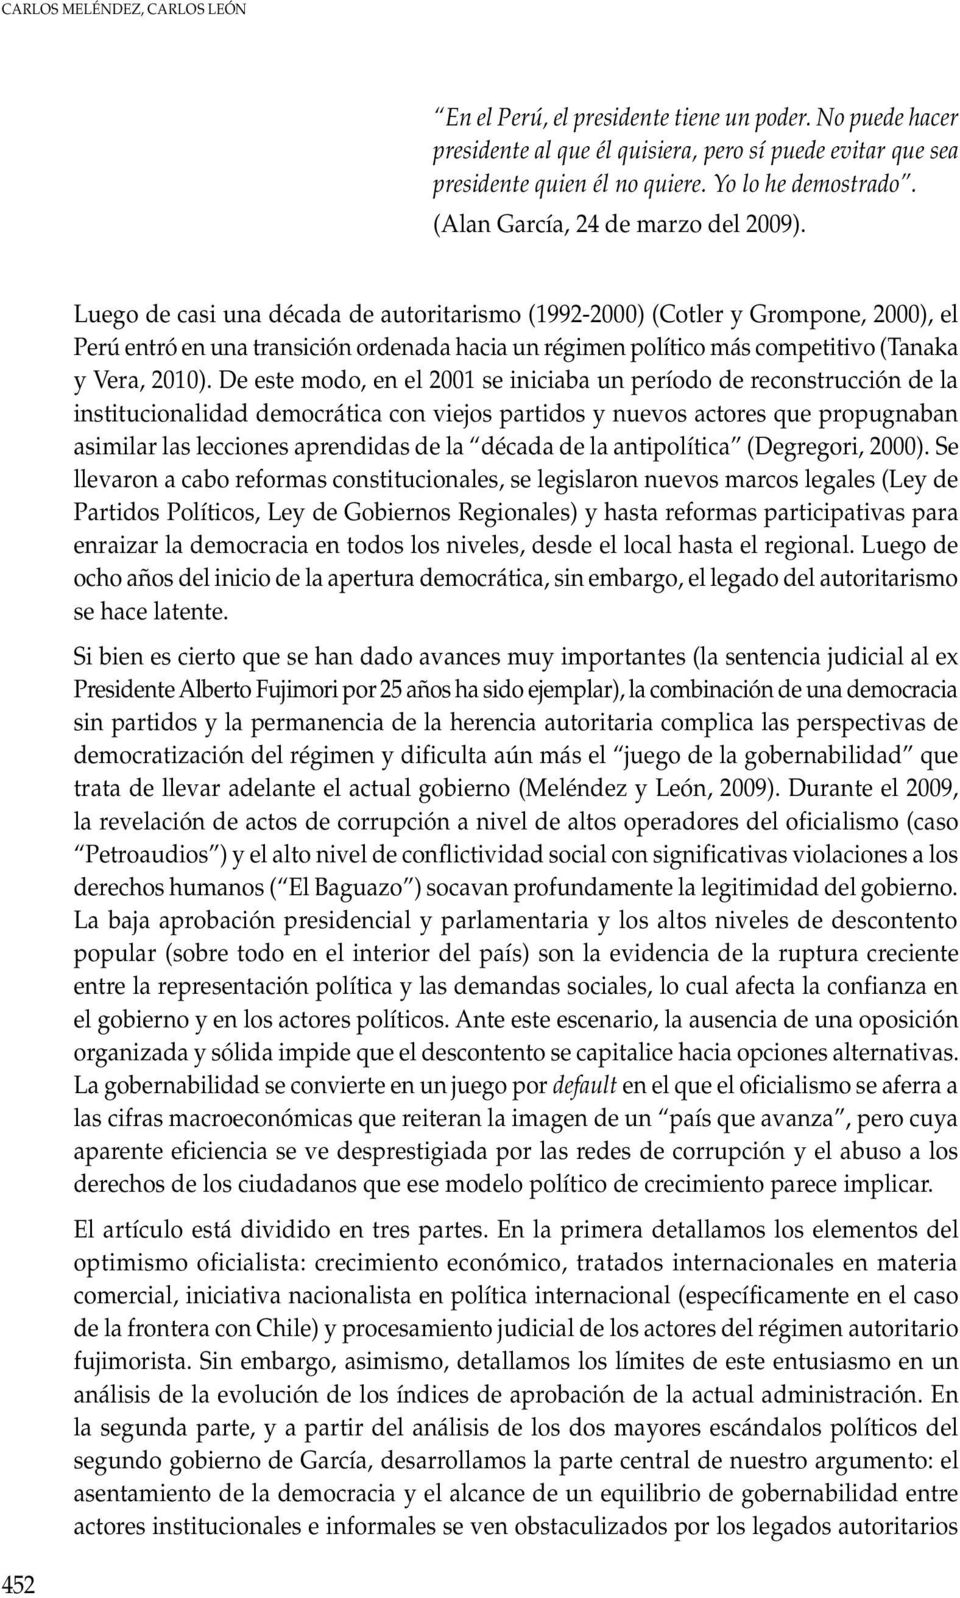 Luego de casi una década de autoritarismo (1992-2000) (Cotler y Grompone, 2000), el Perú entró en una transición ordenada hacia un régimen político más competitivo (Tanaka y Vera, 2010).